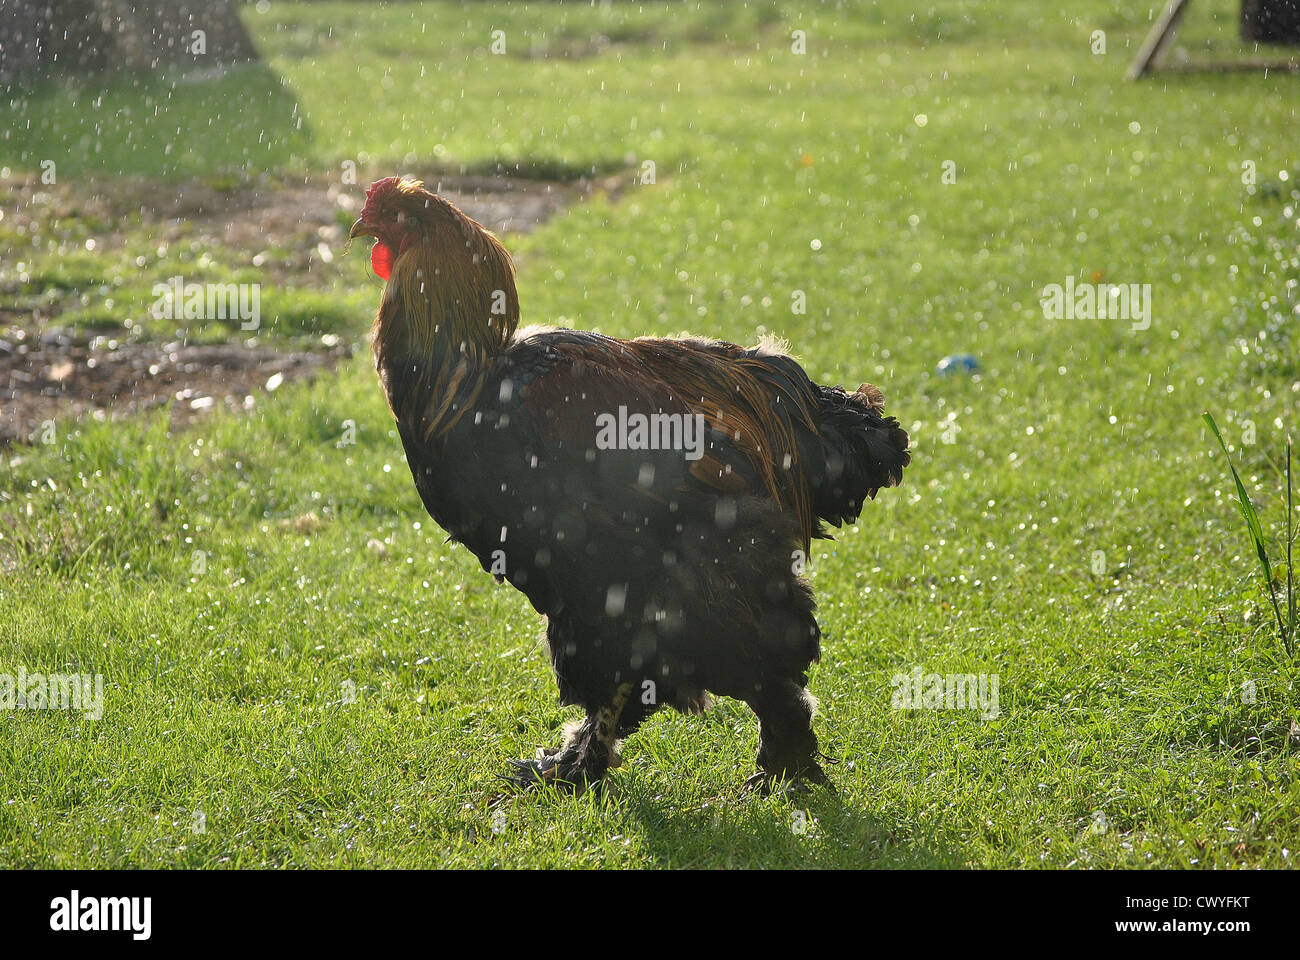 Brahma or poulet dans la pluie Banque D'Images